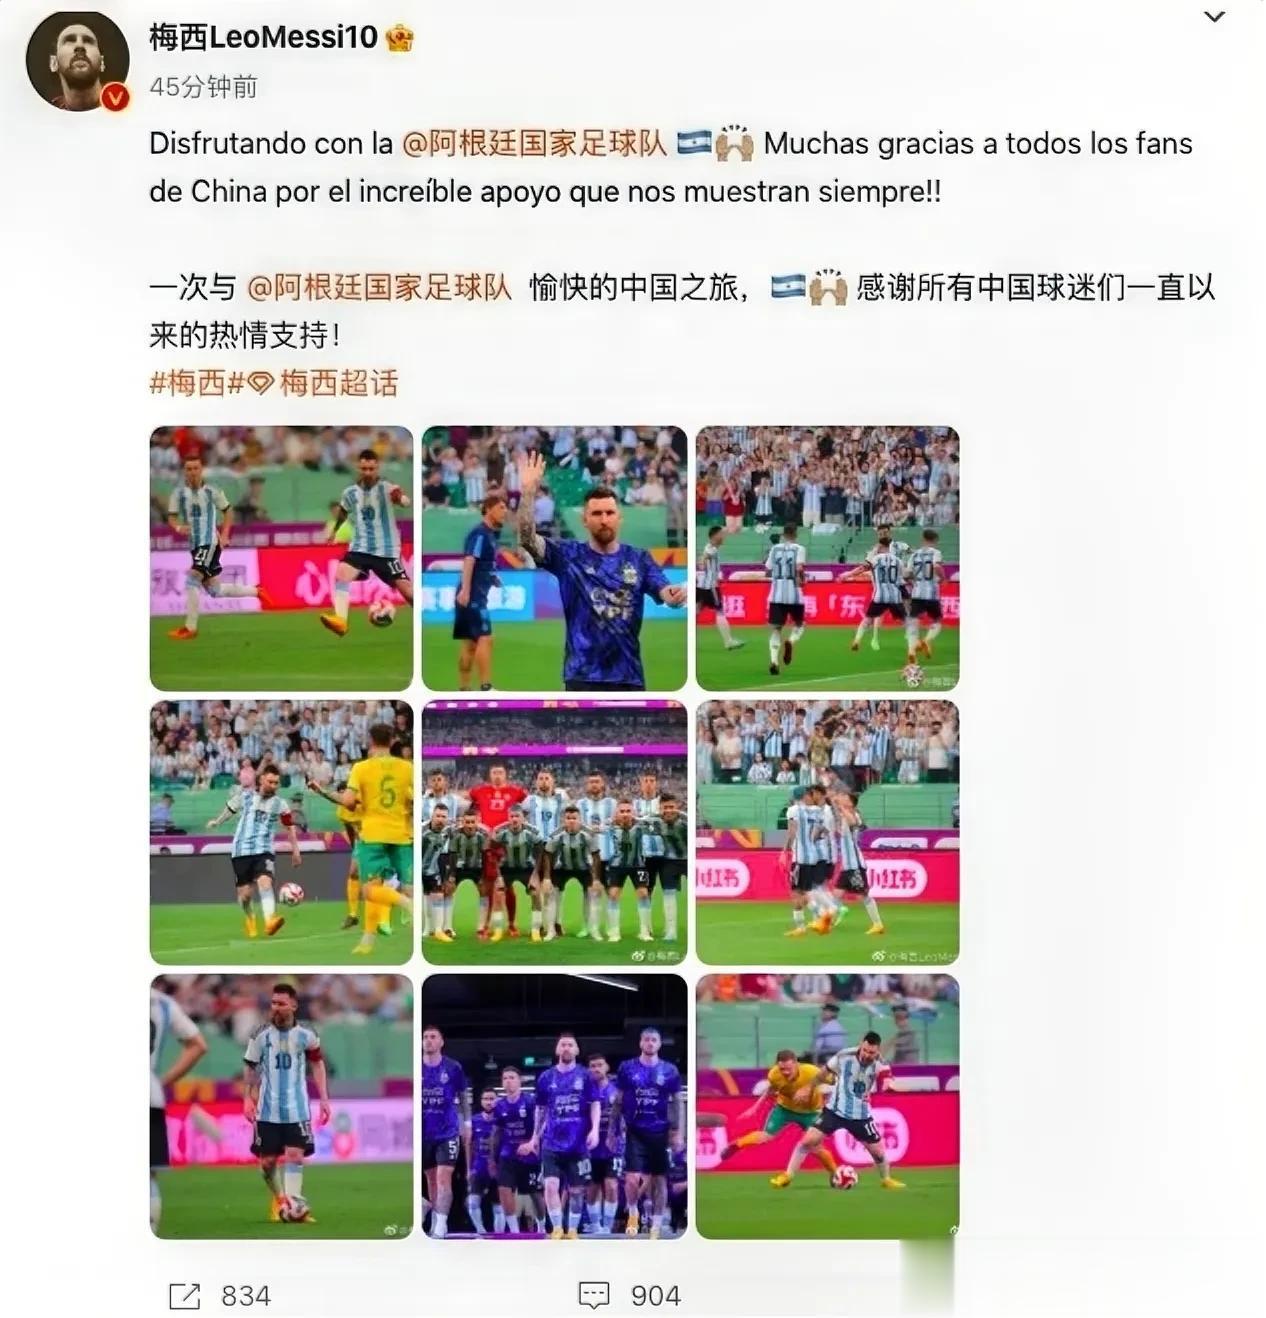 梅球王不要惊讶，这只是一场友谊赛，如果是世界杯正赛，中国球迷会更热情、更狂热。
(1)